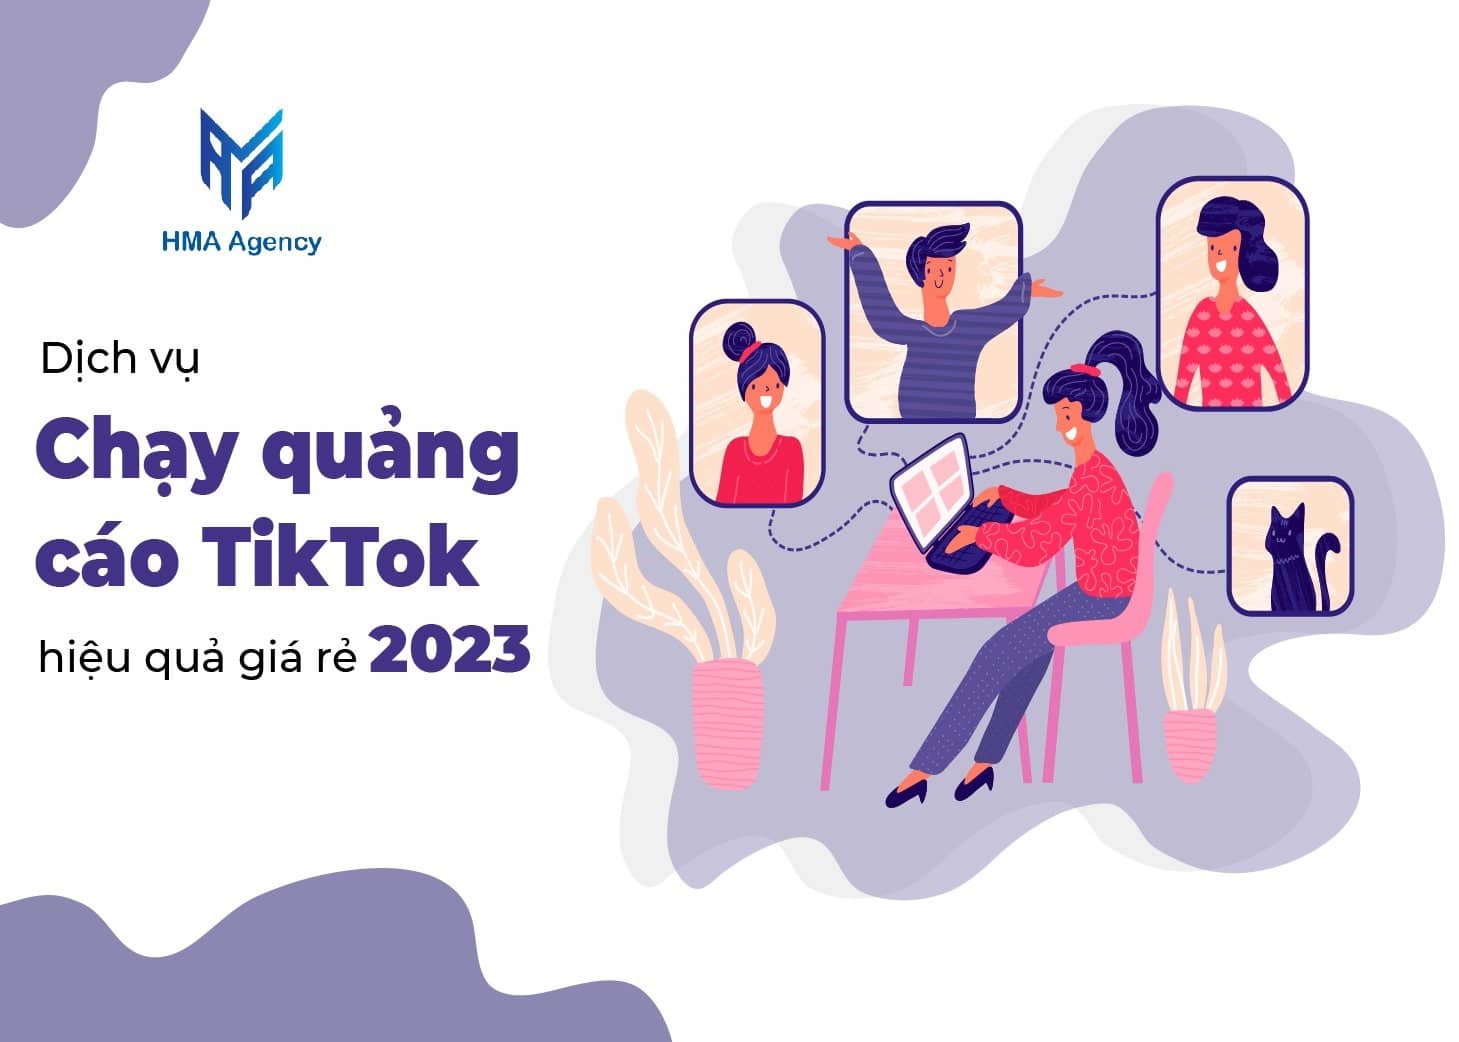 Dịch vụ chạy quảng cáo TikTok hiệu quả chuyên nghiệp giá rẻ 2023